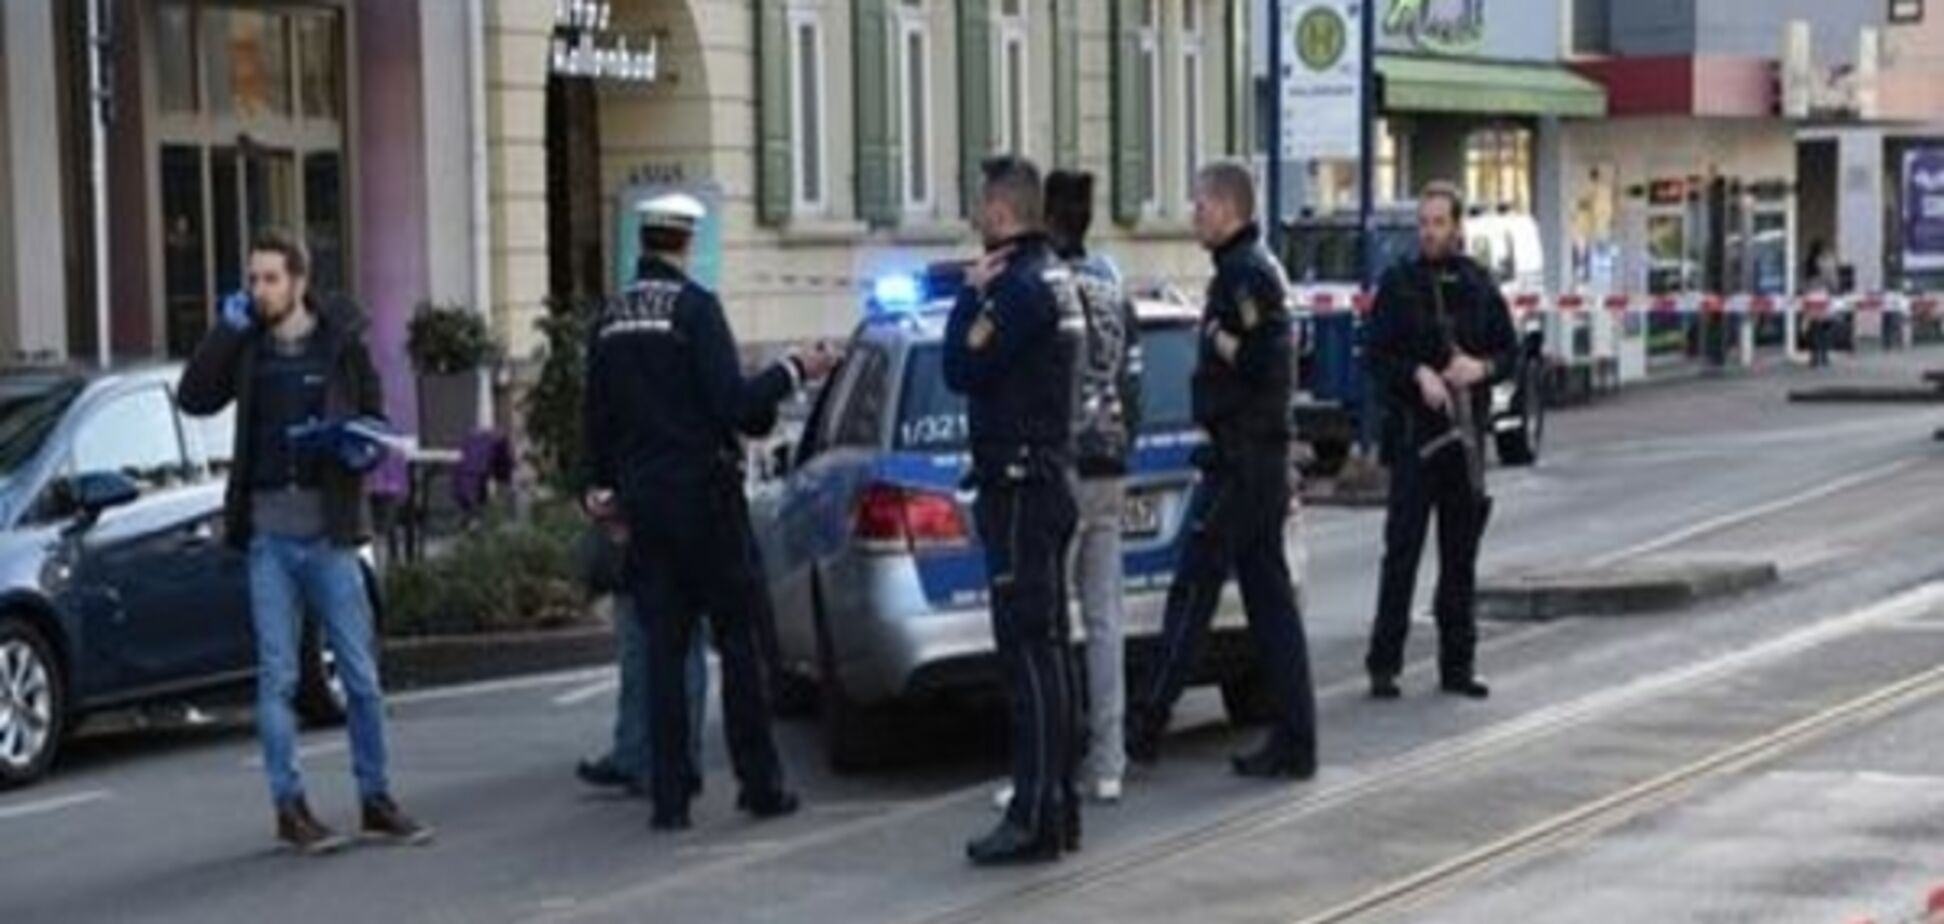 Поліція з'ясовує мотиви водія, який скоїв смертельний наїзд на людей у Гайдельберзі